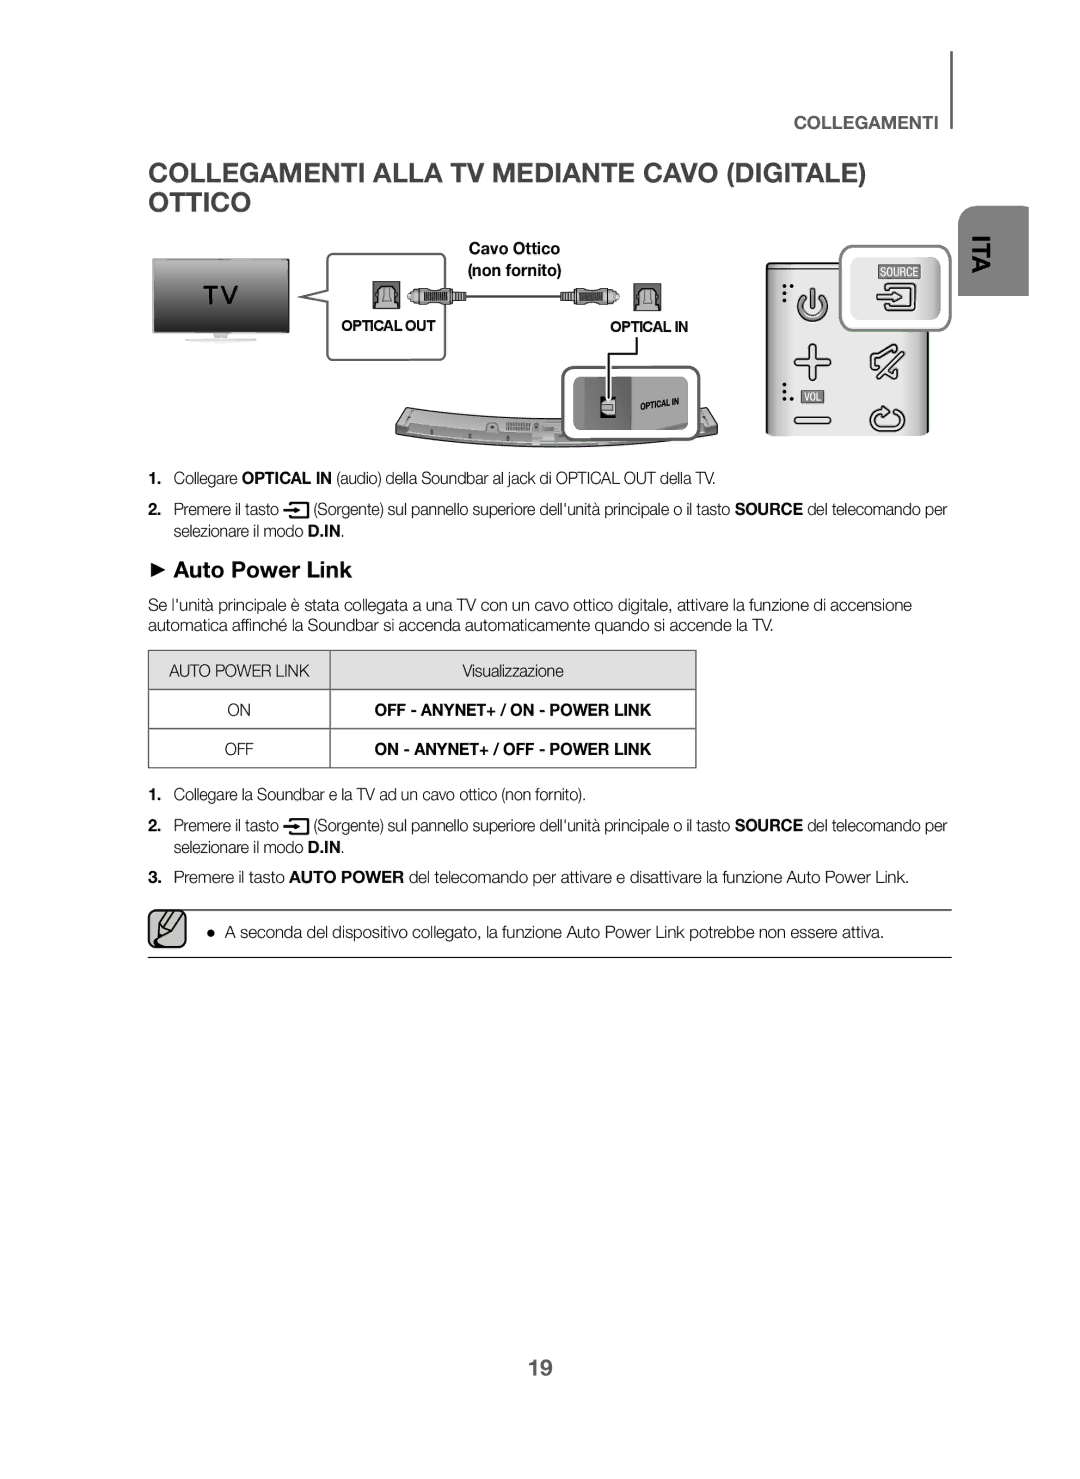 Samsung HW-J6000/ZF manual Collegamenti Alla TV Mediante Cavo Digitale Ottico, Cavo Ottico non fornito, Visualizzazione 